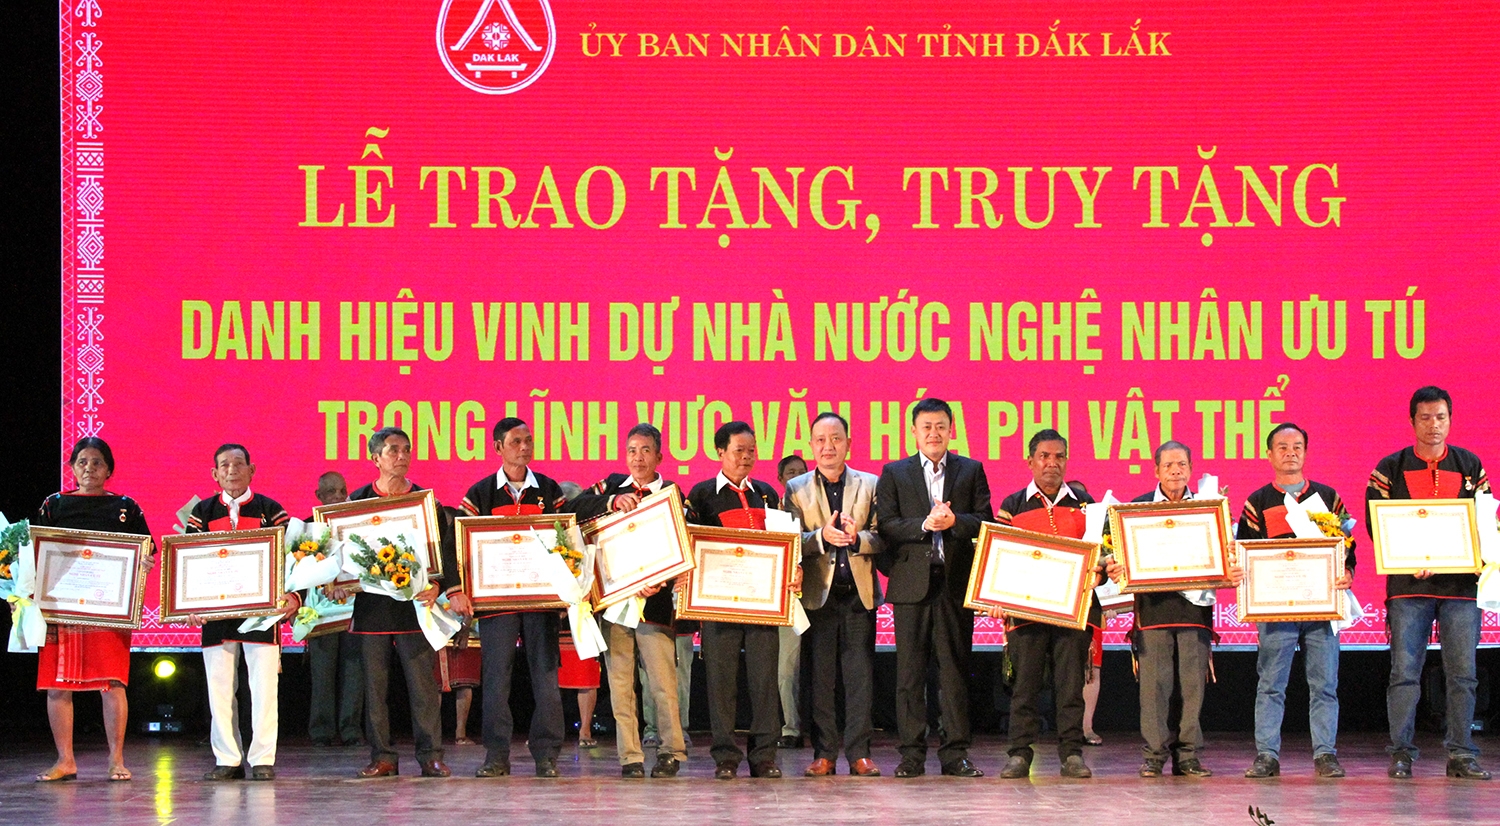 Các nghệ nhân được công nhận Nghệ nhân Ưu tú tỉnh Đắk Lắk năm 2022